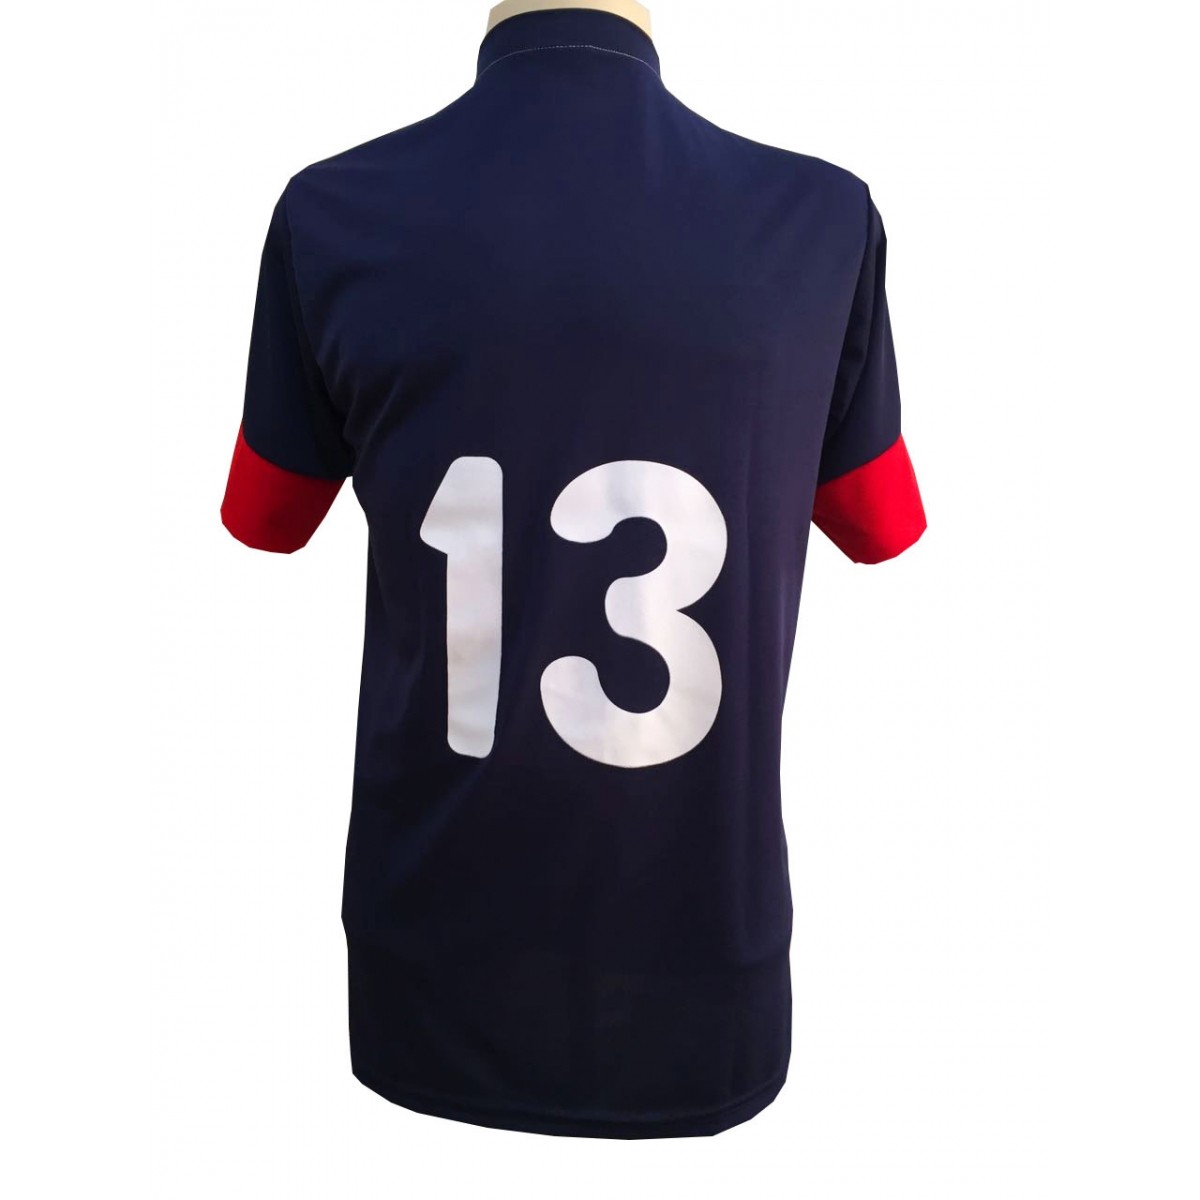 Uniforme Esportivo Completo modelo Sporting 14+1 (14 camisas Marinho/Vermelho/Branco + 14 calções Madrid Marinho + 14 pares de meiões Marinhos + 1 conjunto de goleiro) + Brindes